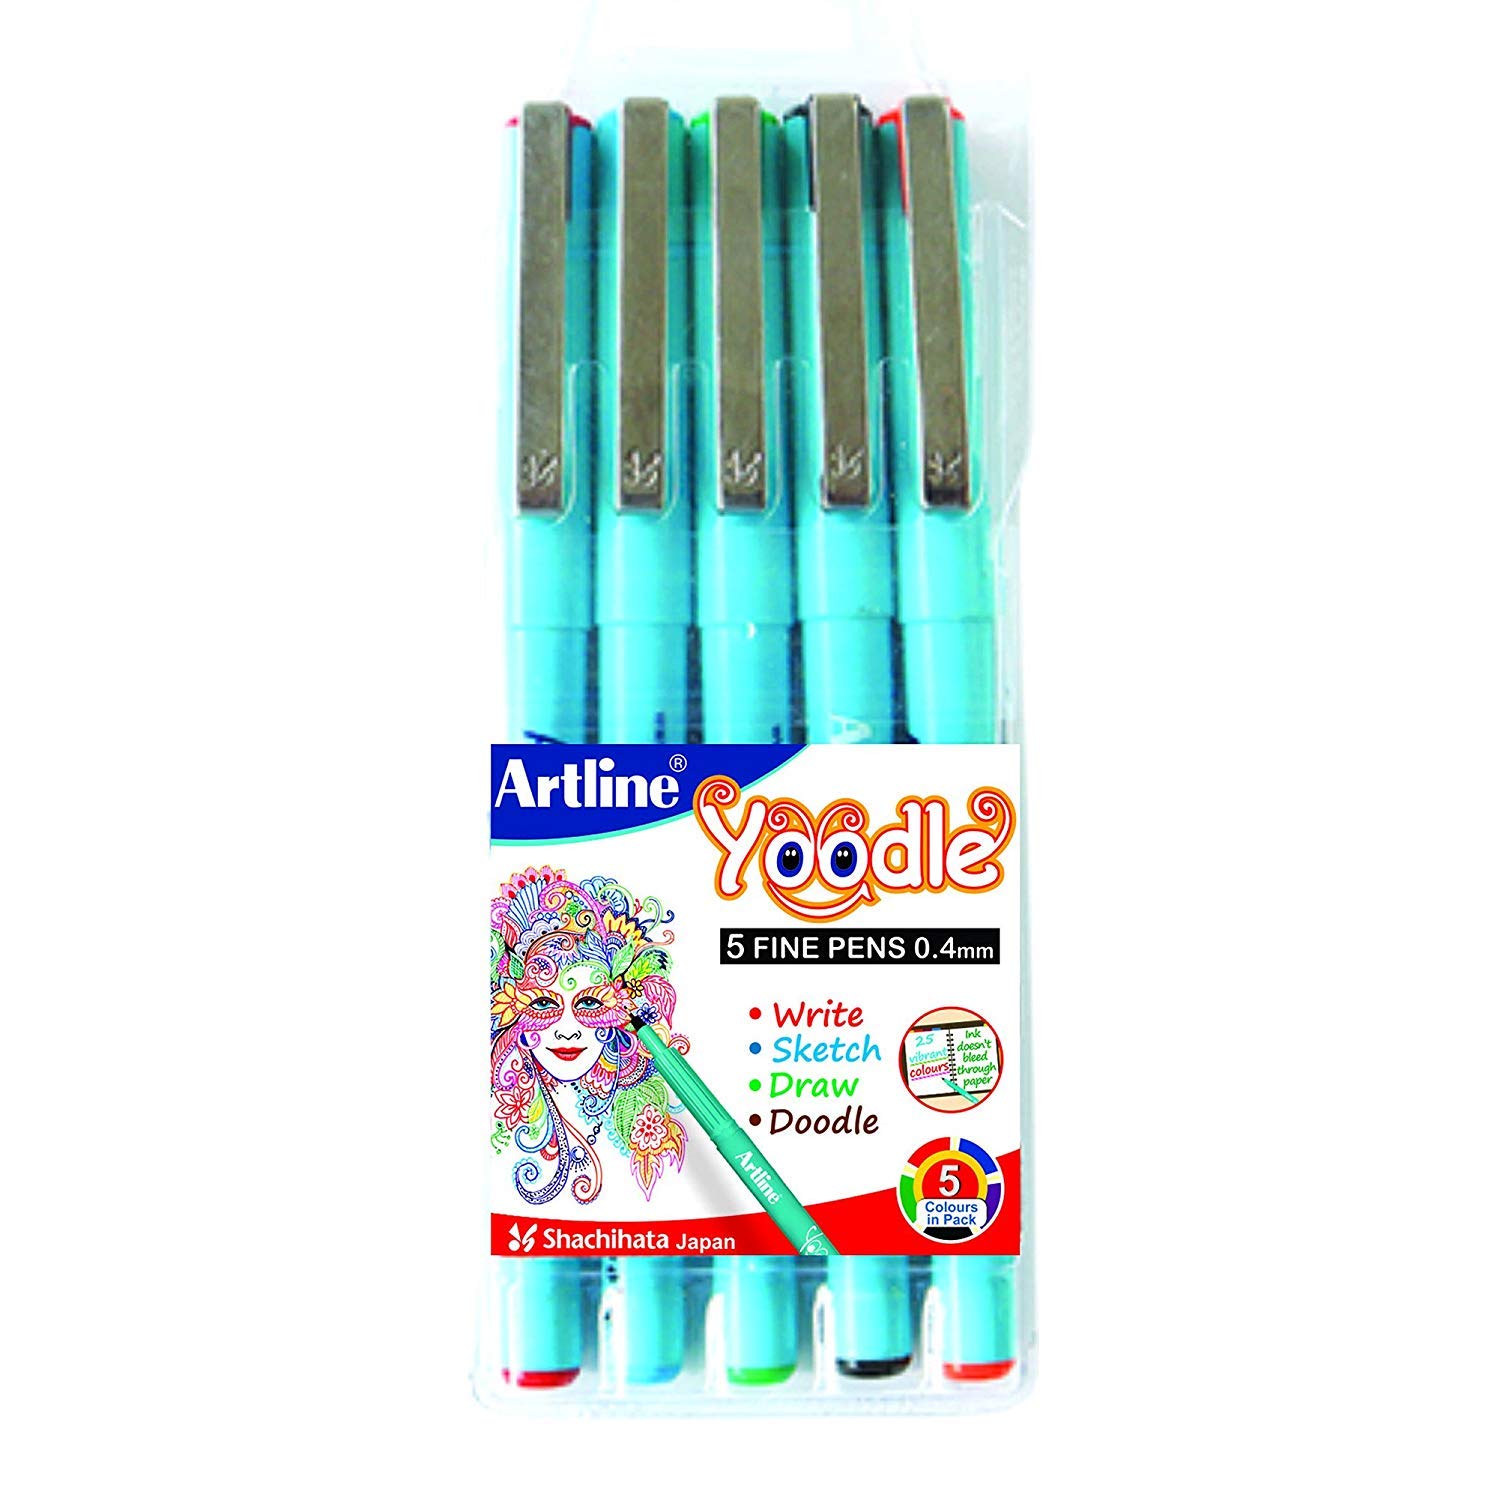 Artline FD6342300001 Yoodle Fine Line Pen Set - Pack of 5